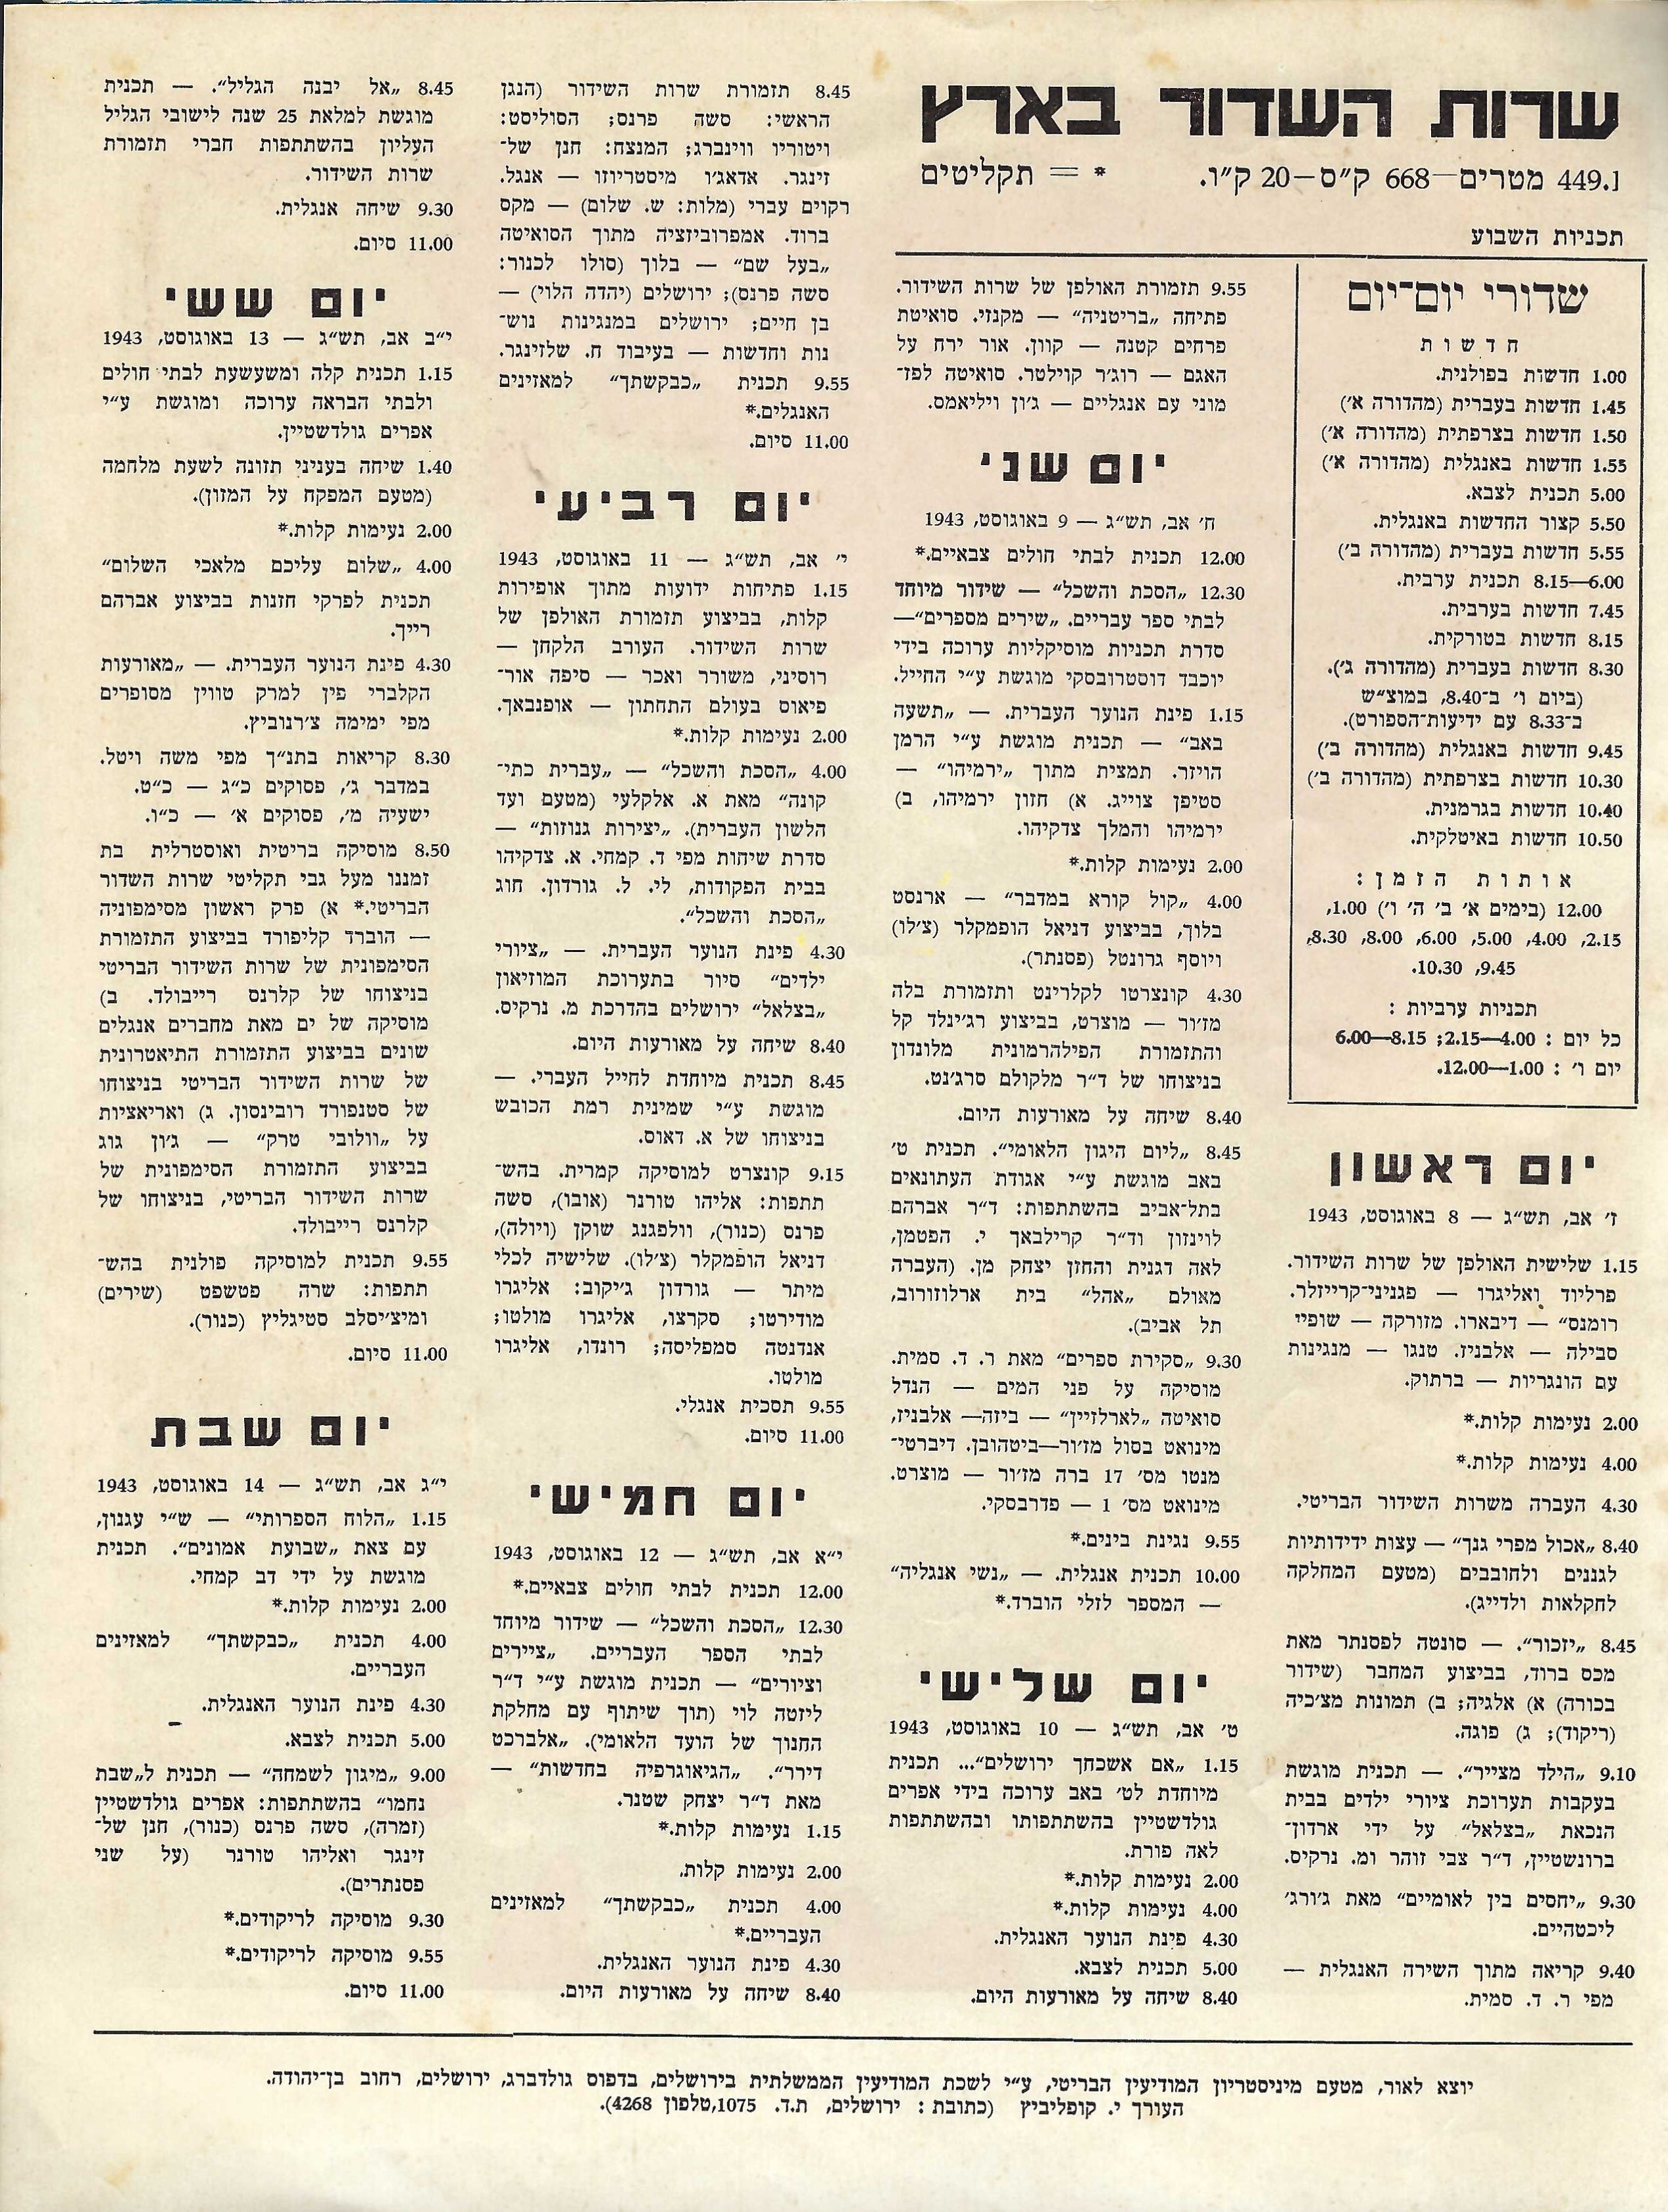 Radio Schedule: August 8, 1943- August 14, 1943